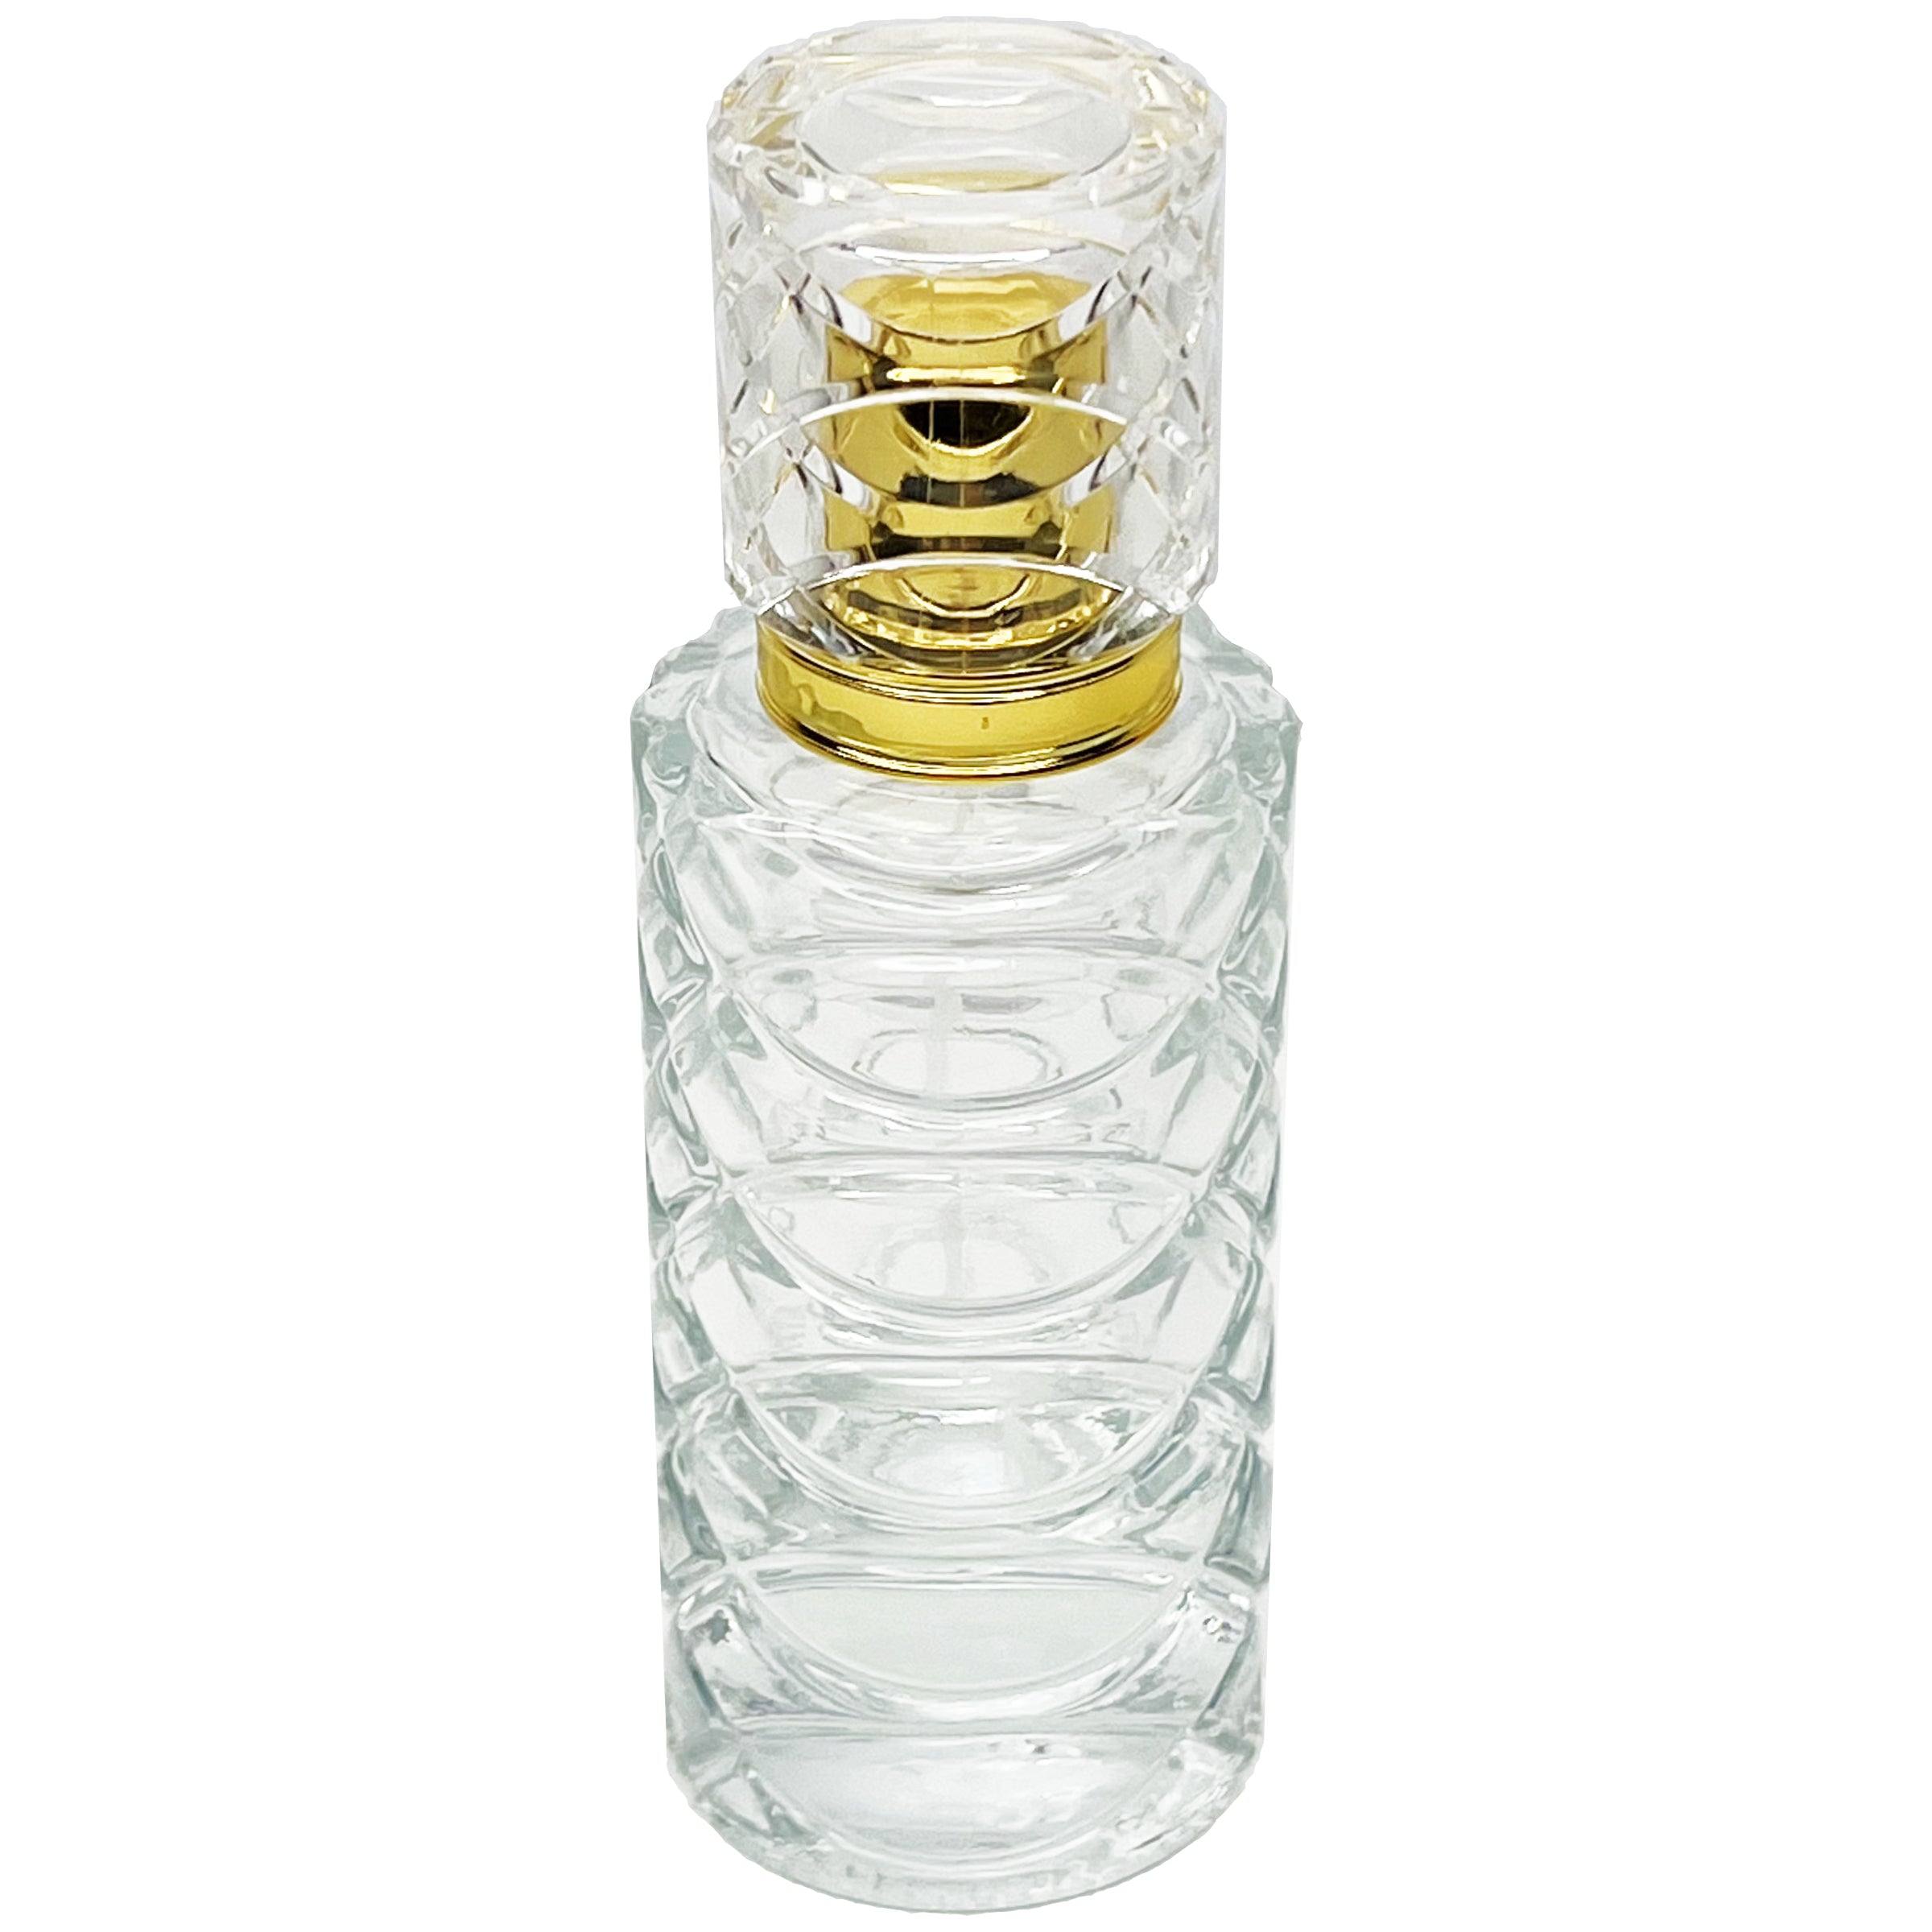 50ml 1.7oz heavy vintage glass ichthys perfume bottles